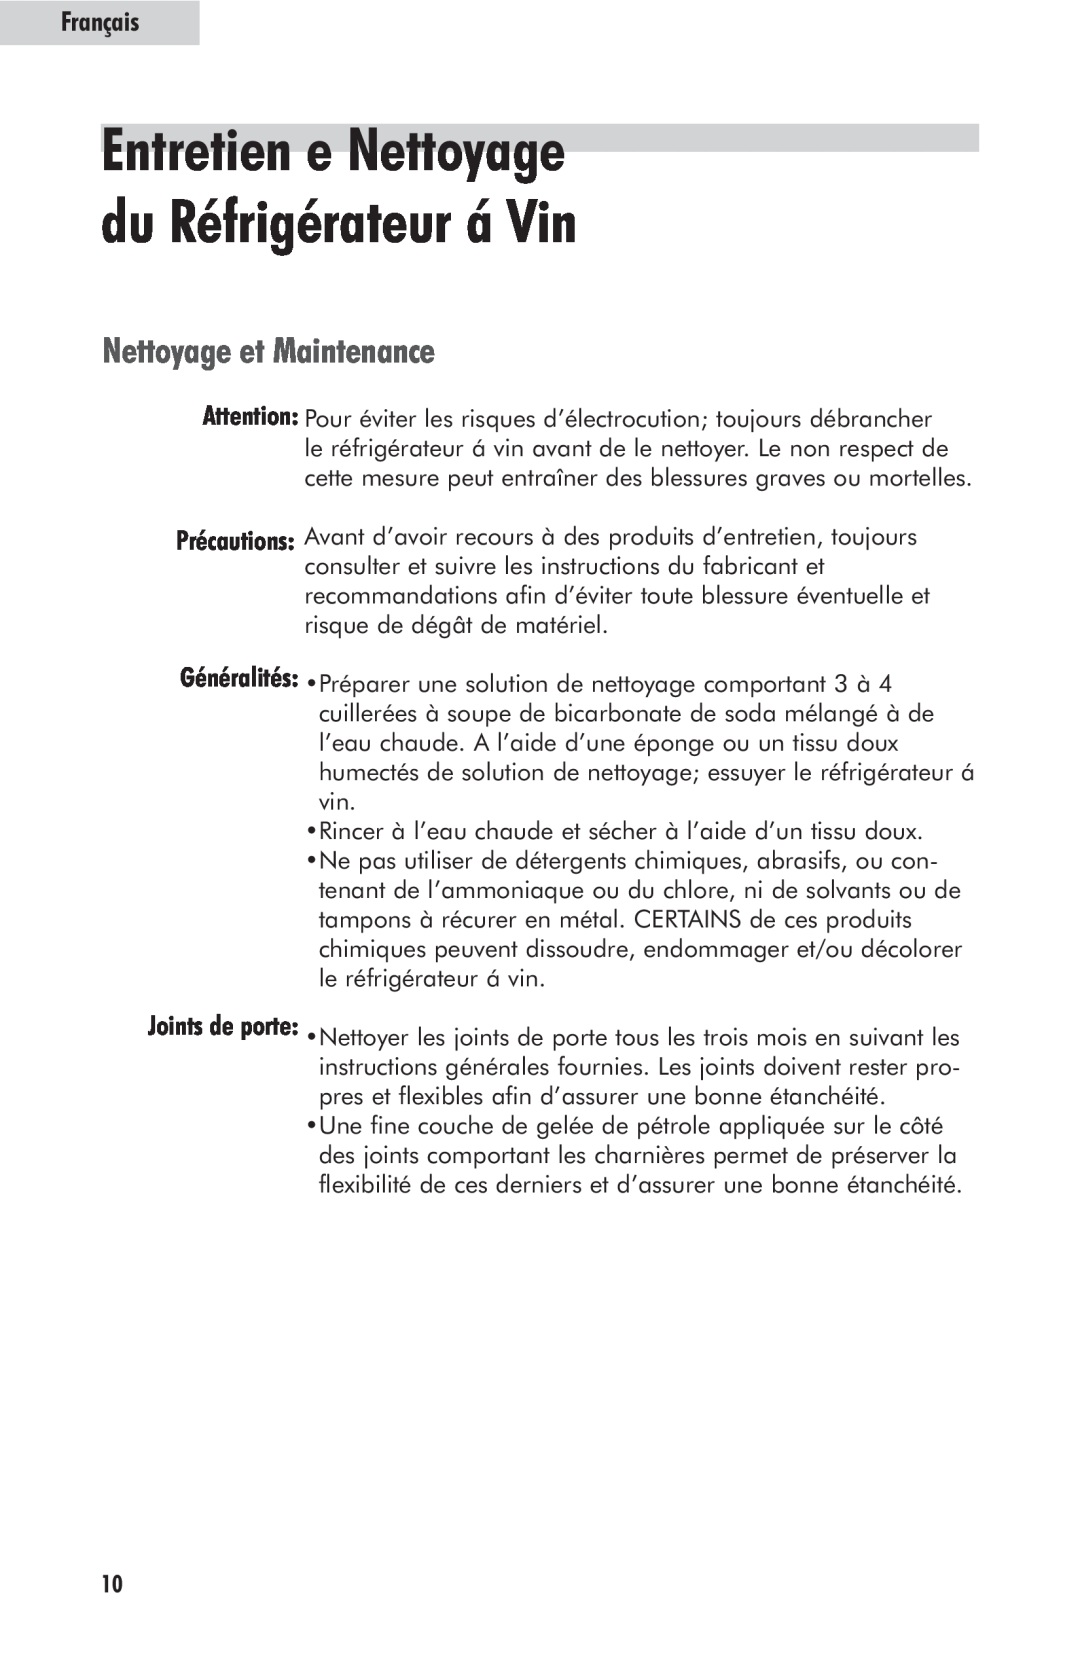 Haier HW24WF10NG, HW42WF10NG user manual Entretien e Nettoyage du Réfrigérateur á Vin, Nettoyage et Maintenance, Français 